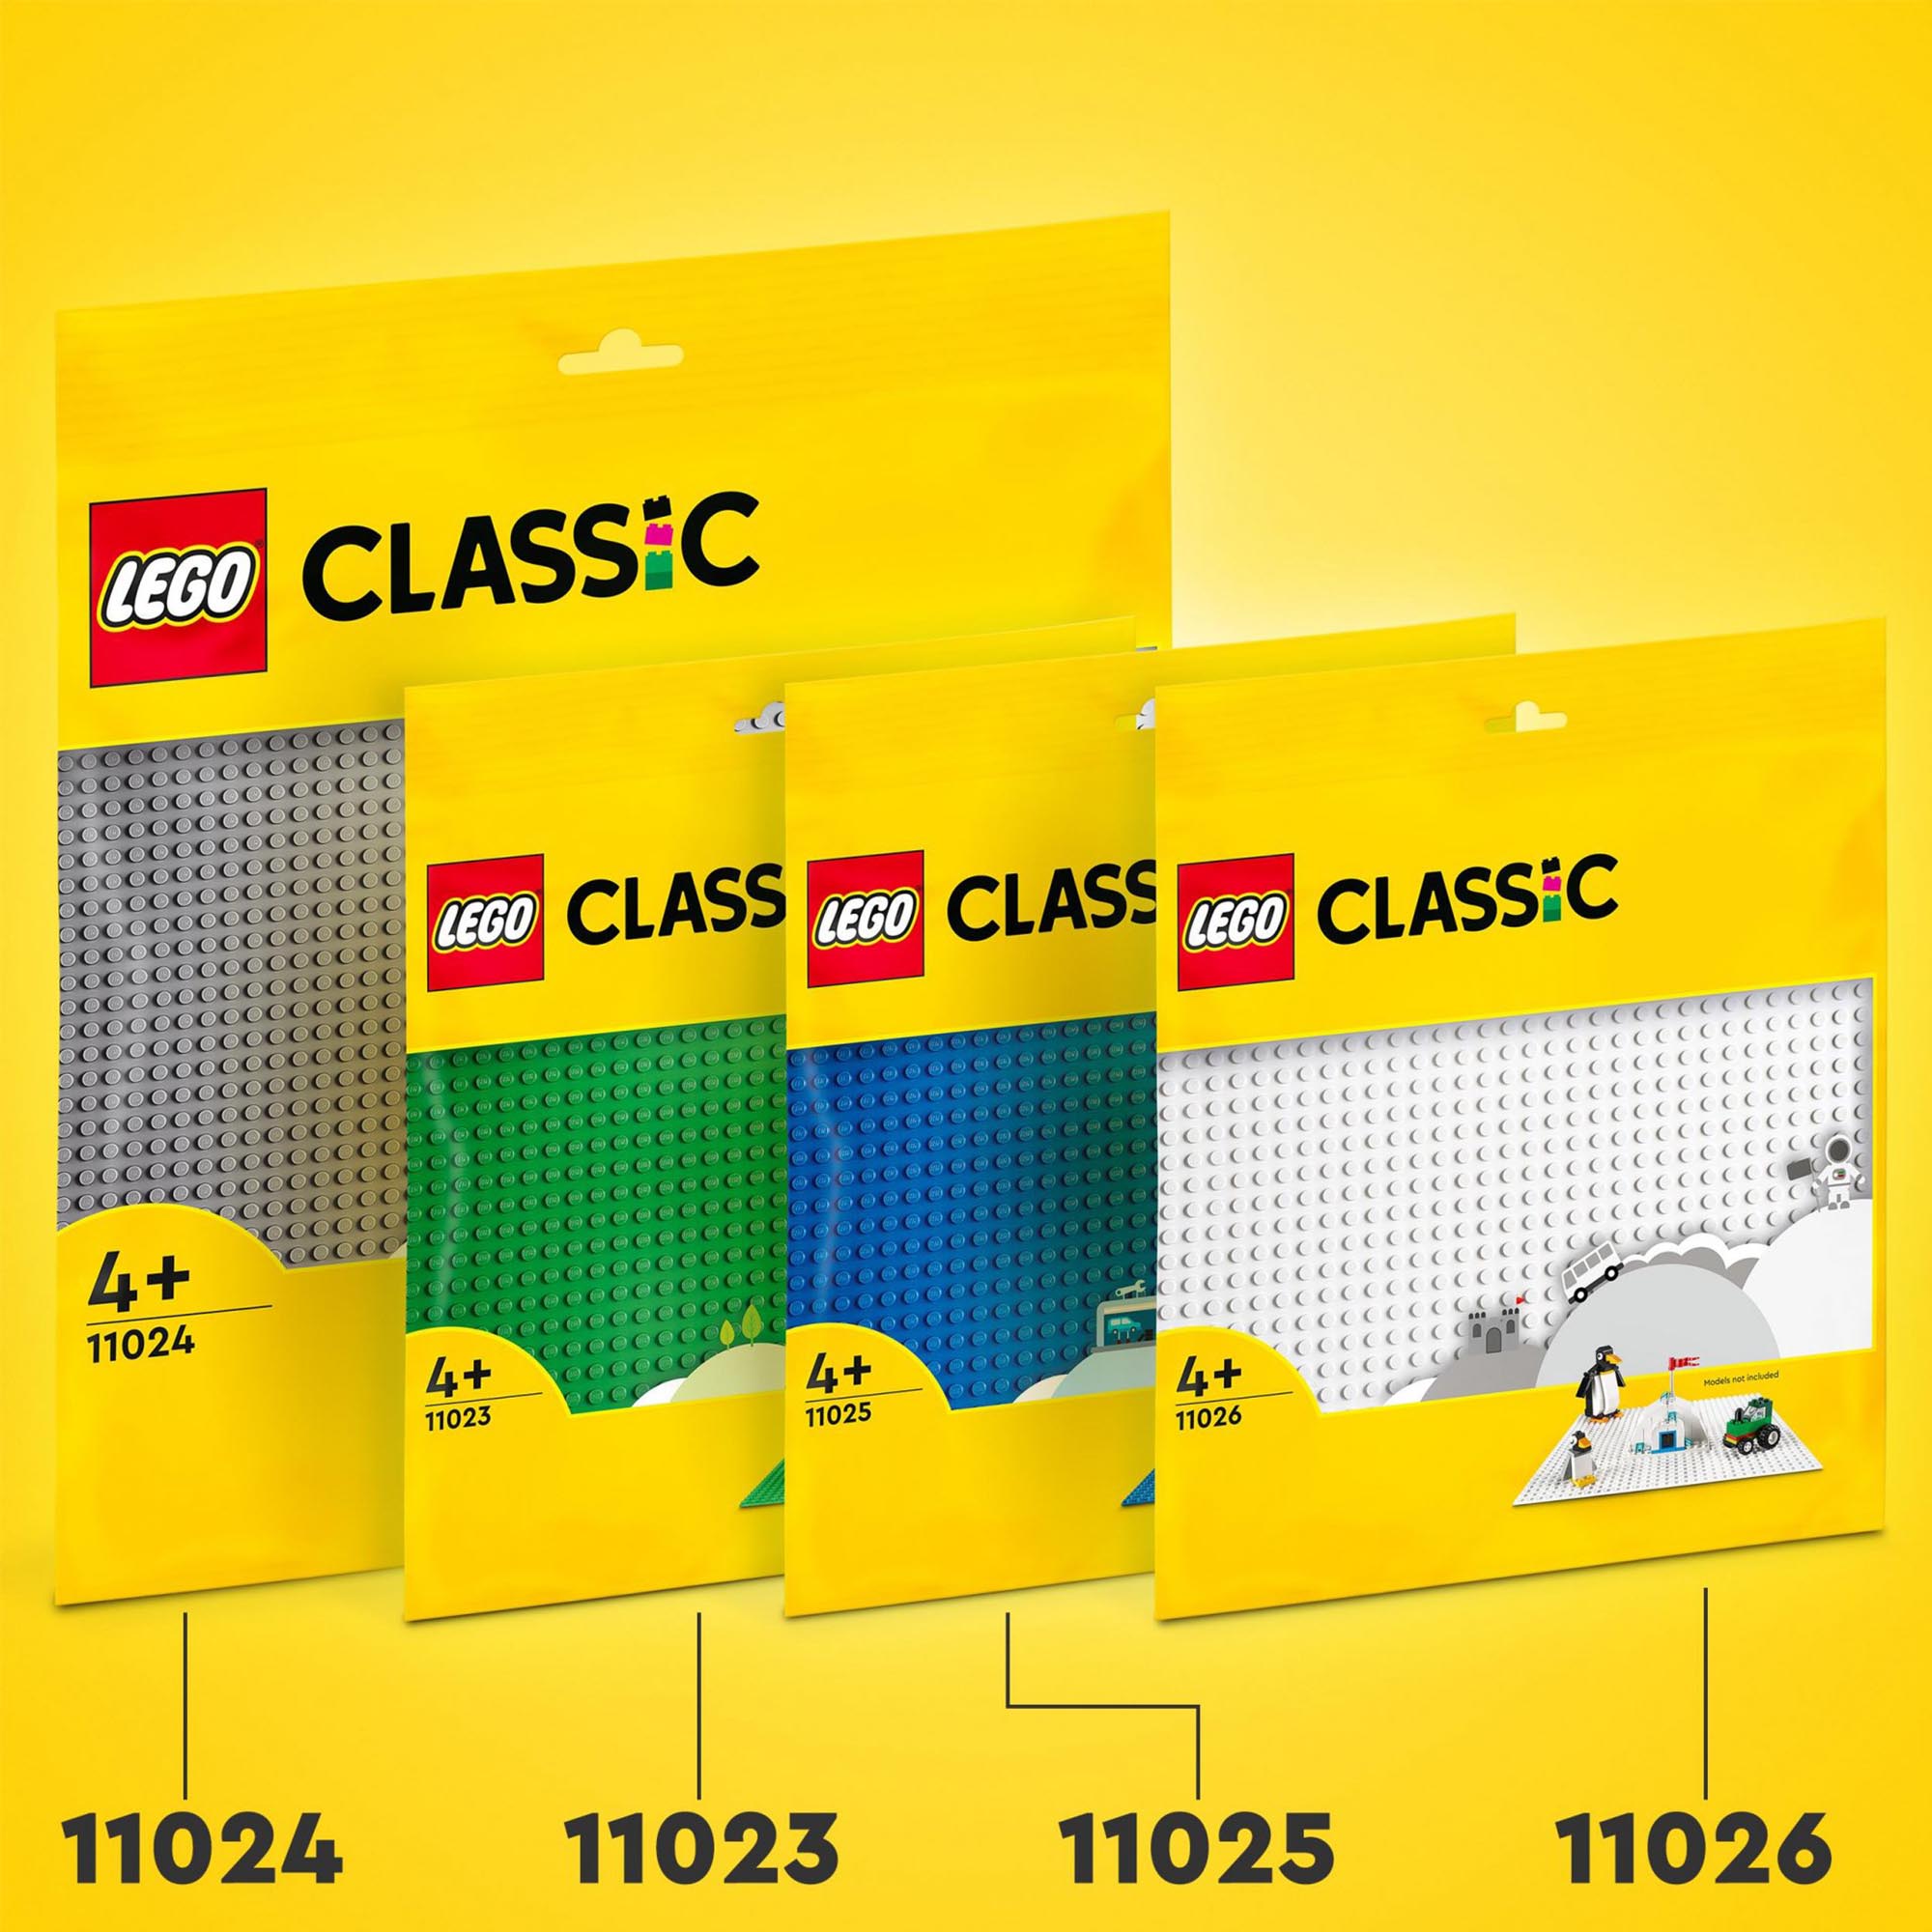 LEGO 11026 Classic Base Bianca, Tavola per Costruzioni Quadrata con 32x32 Botton 11026, , large